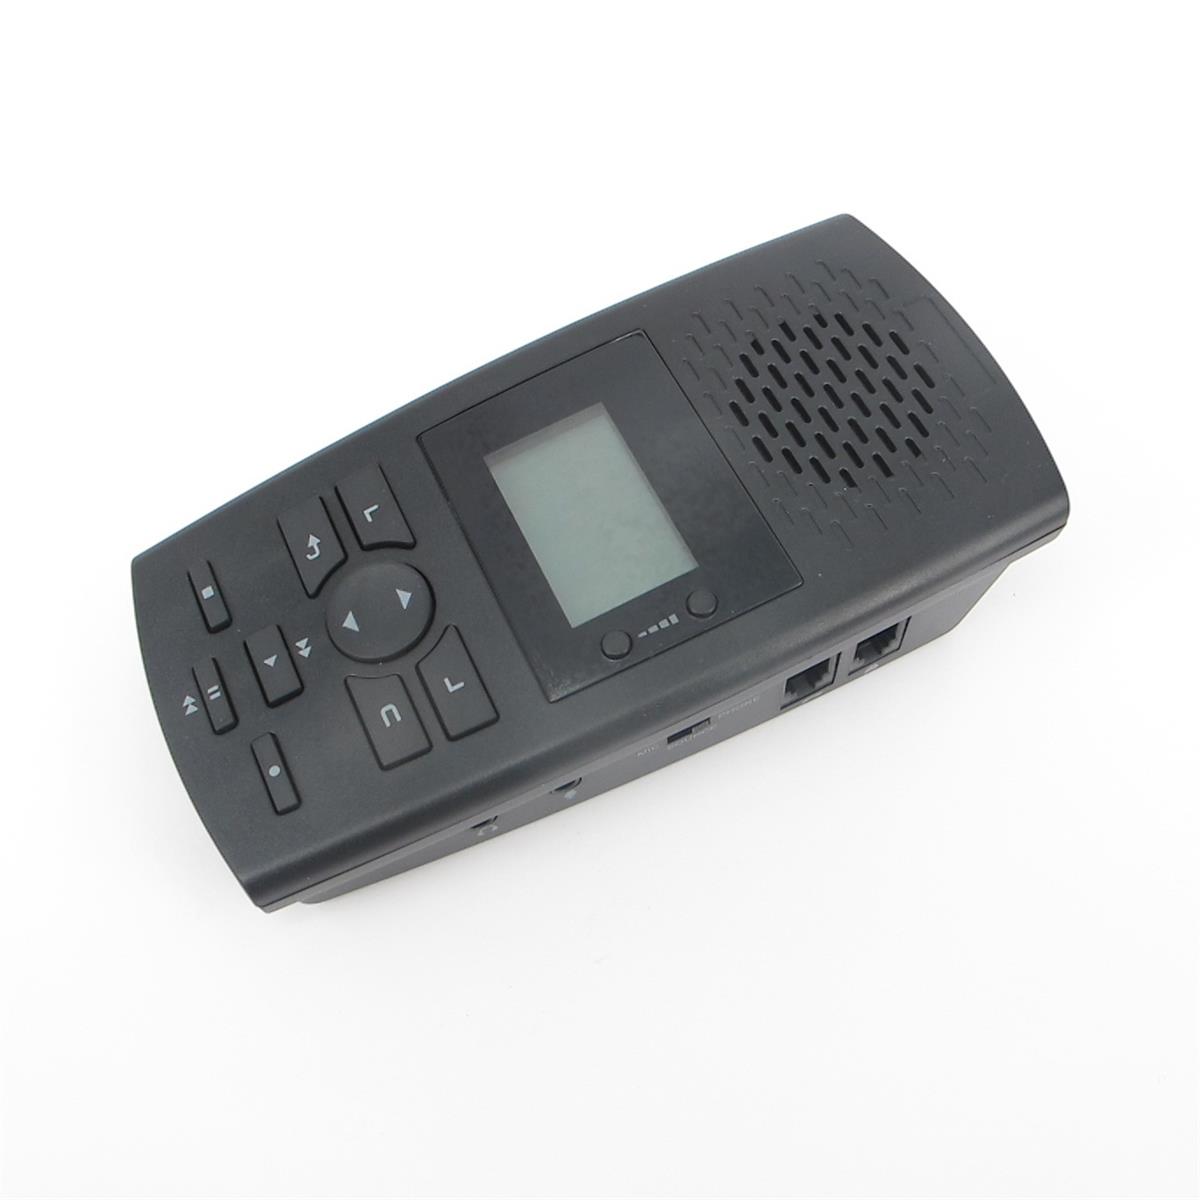 SR100 telephone Voice recorder